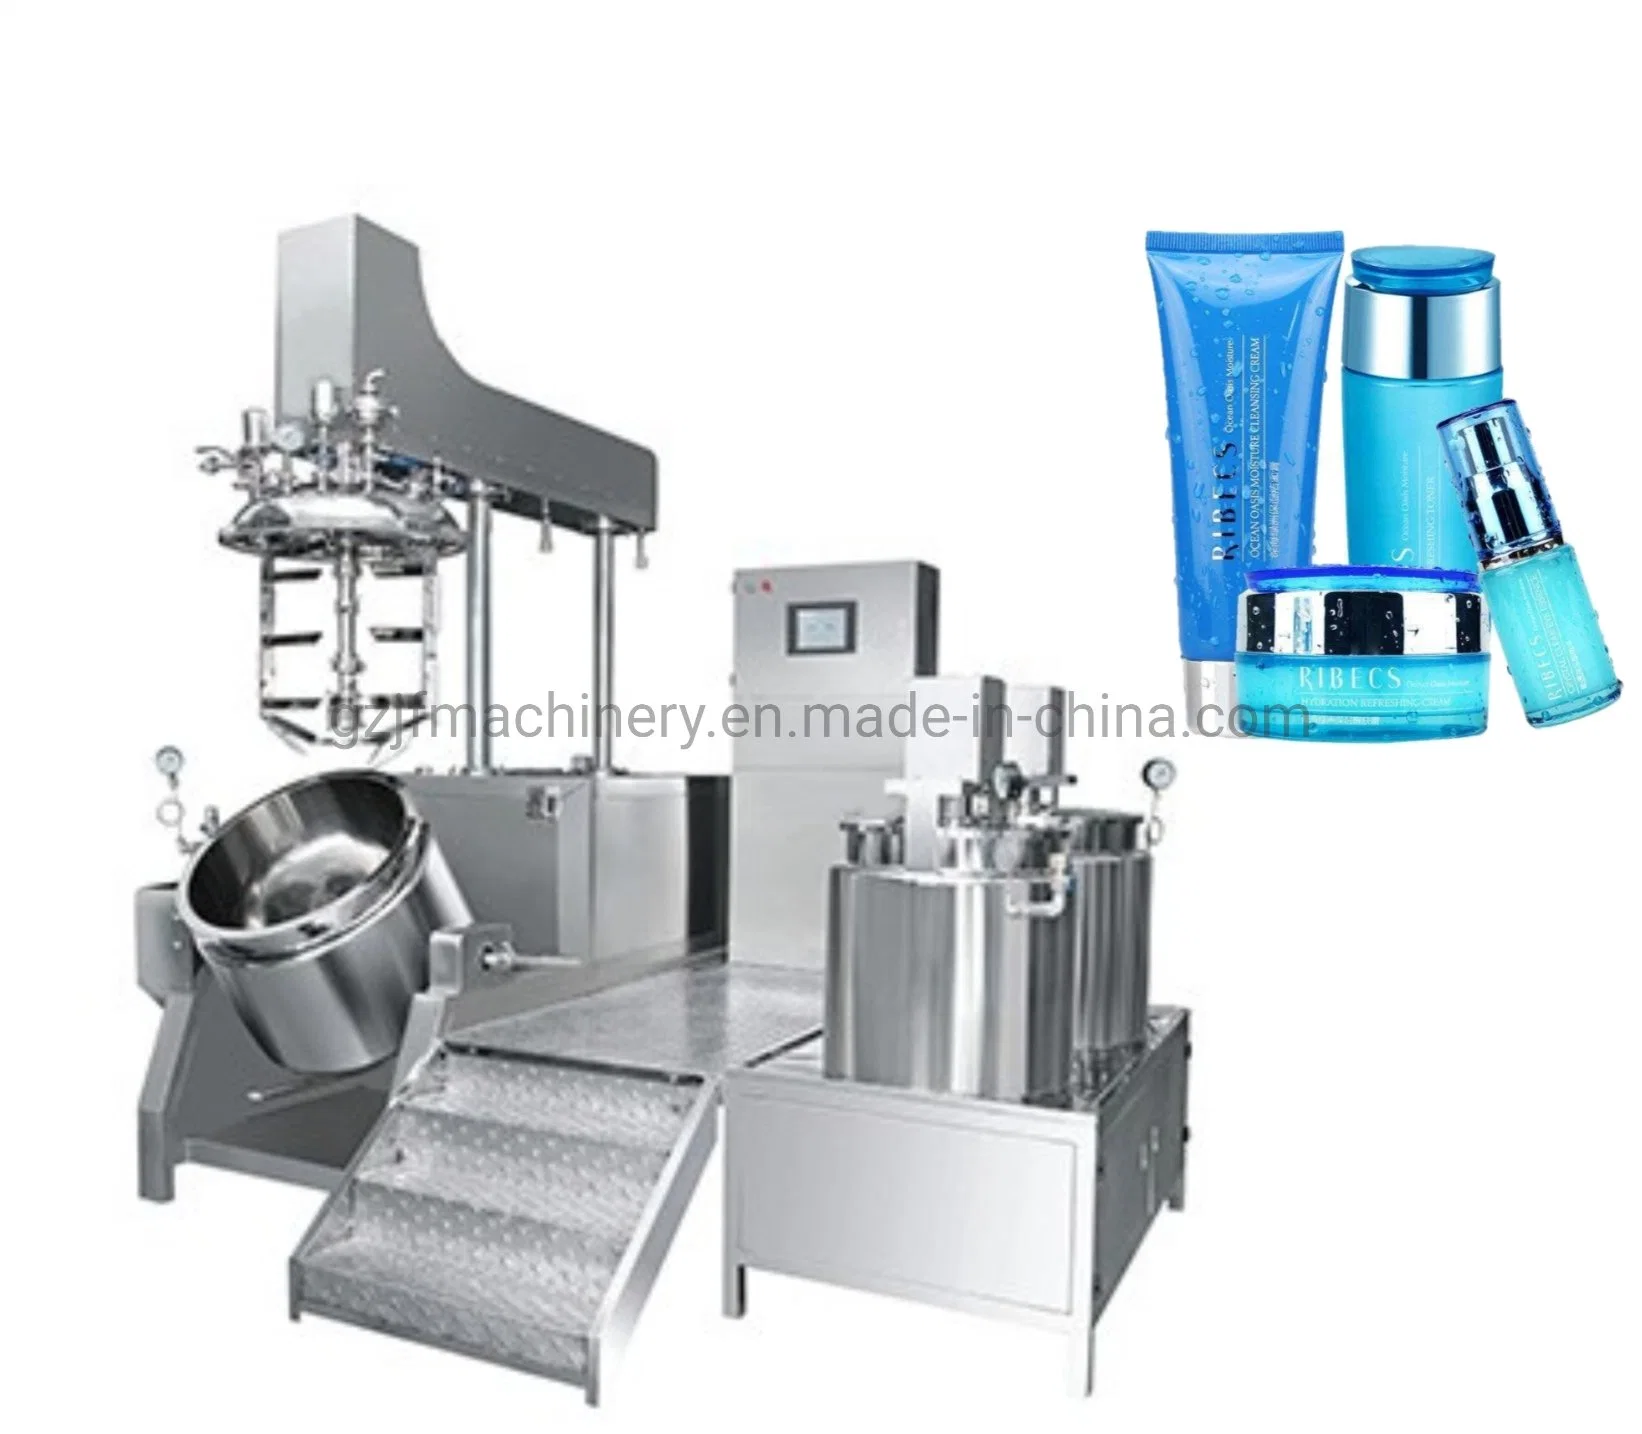 Loción desinfectante de manos de alta calidad elevación hidráulica emulsión cosmética al vacío Máquina mezcladora